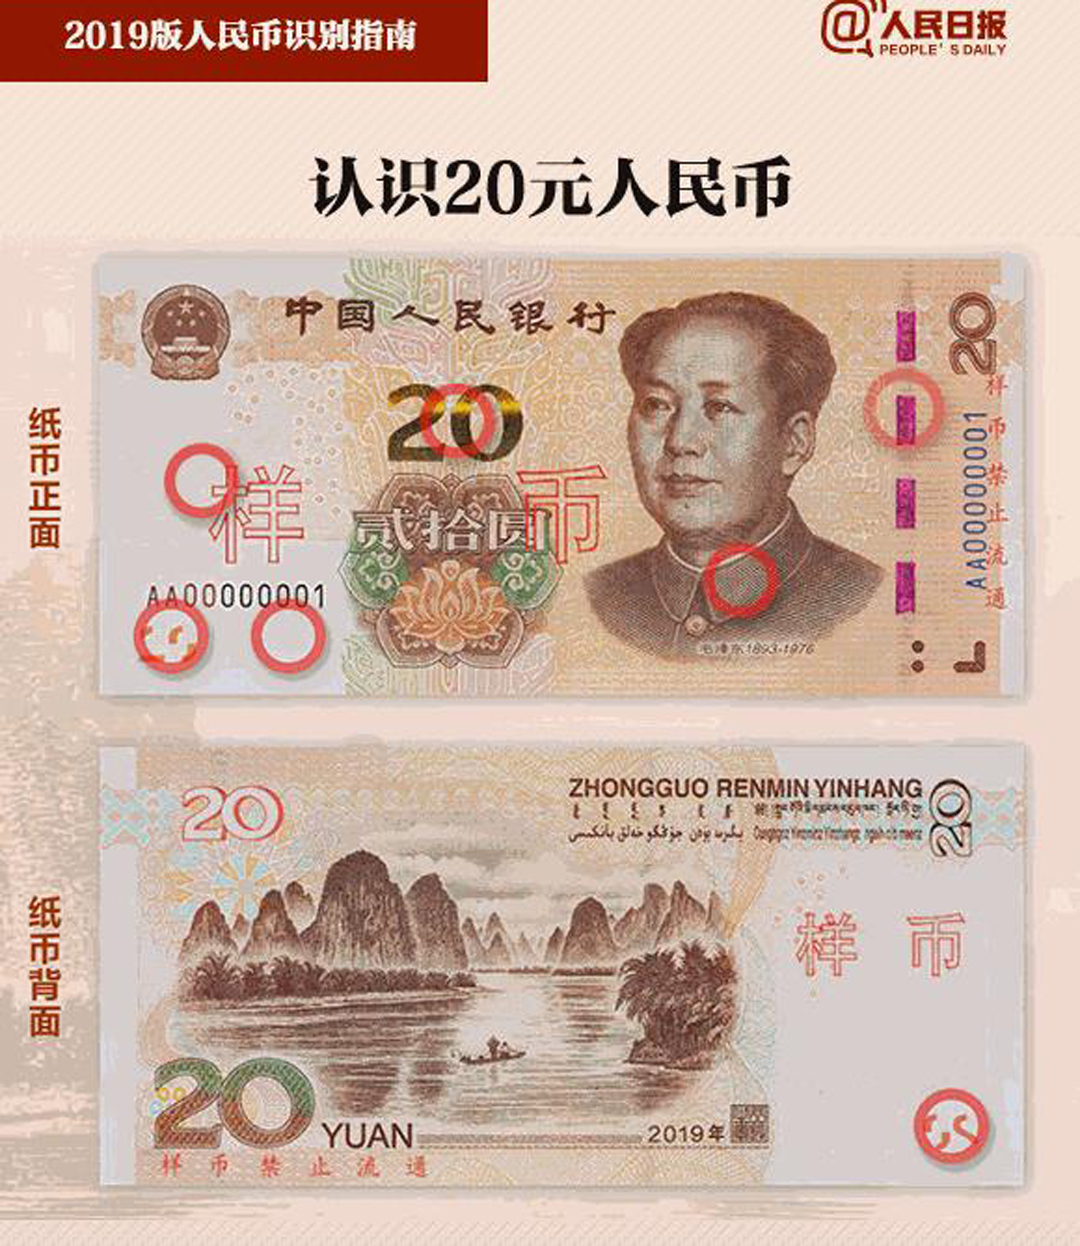 新版人民币自带美颜滤镜